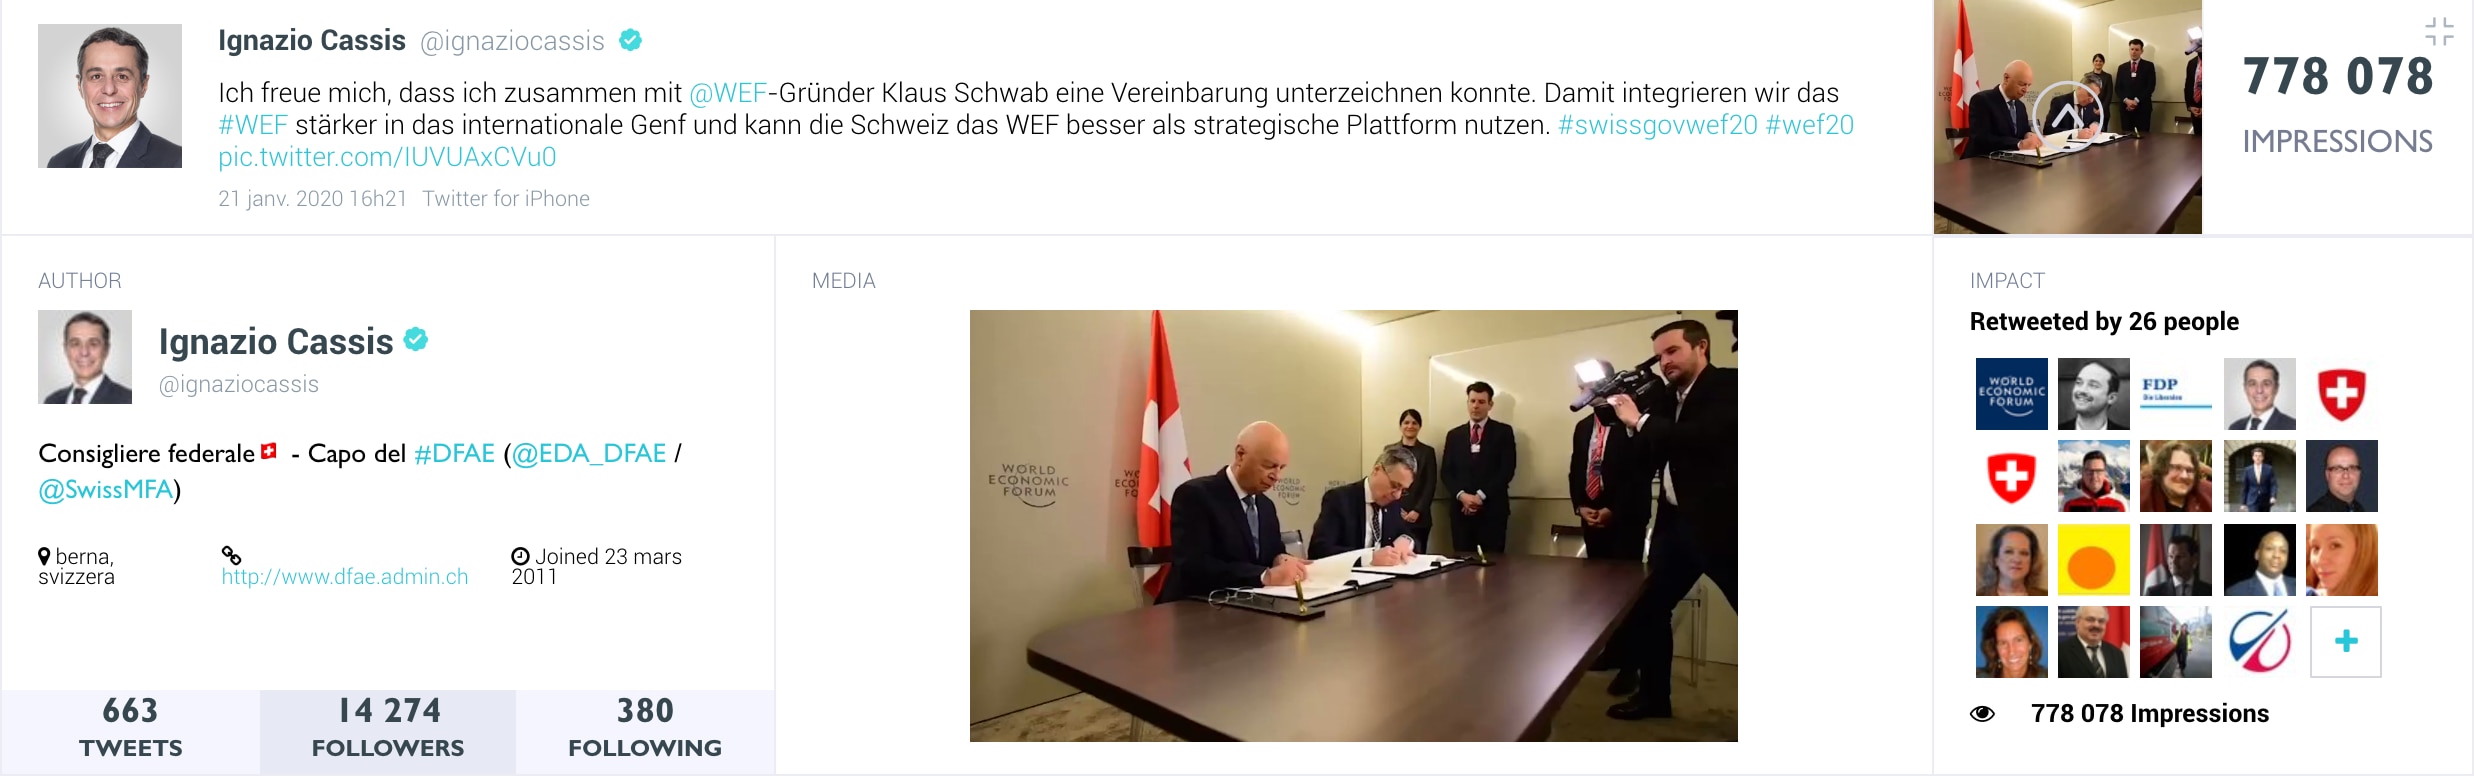 Le conseiller fédéral Ignazio Cassis et le fondateur du WEF, Klaus Schwab, signent un accord au WEF de Davos.